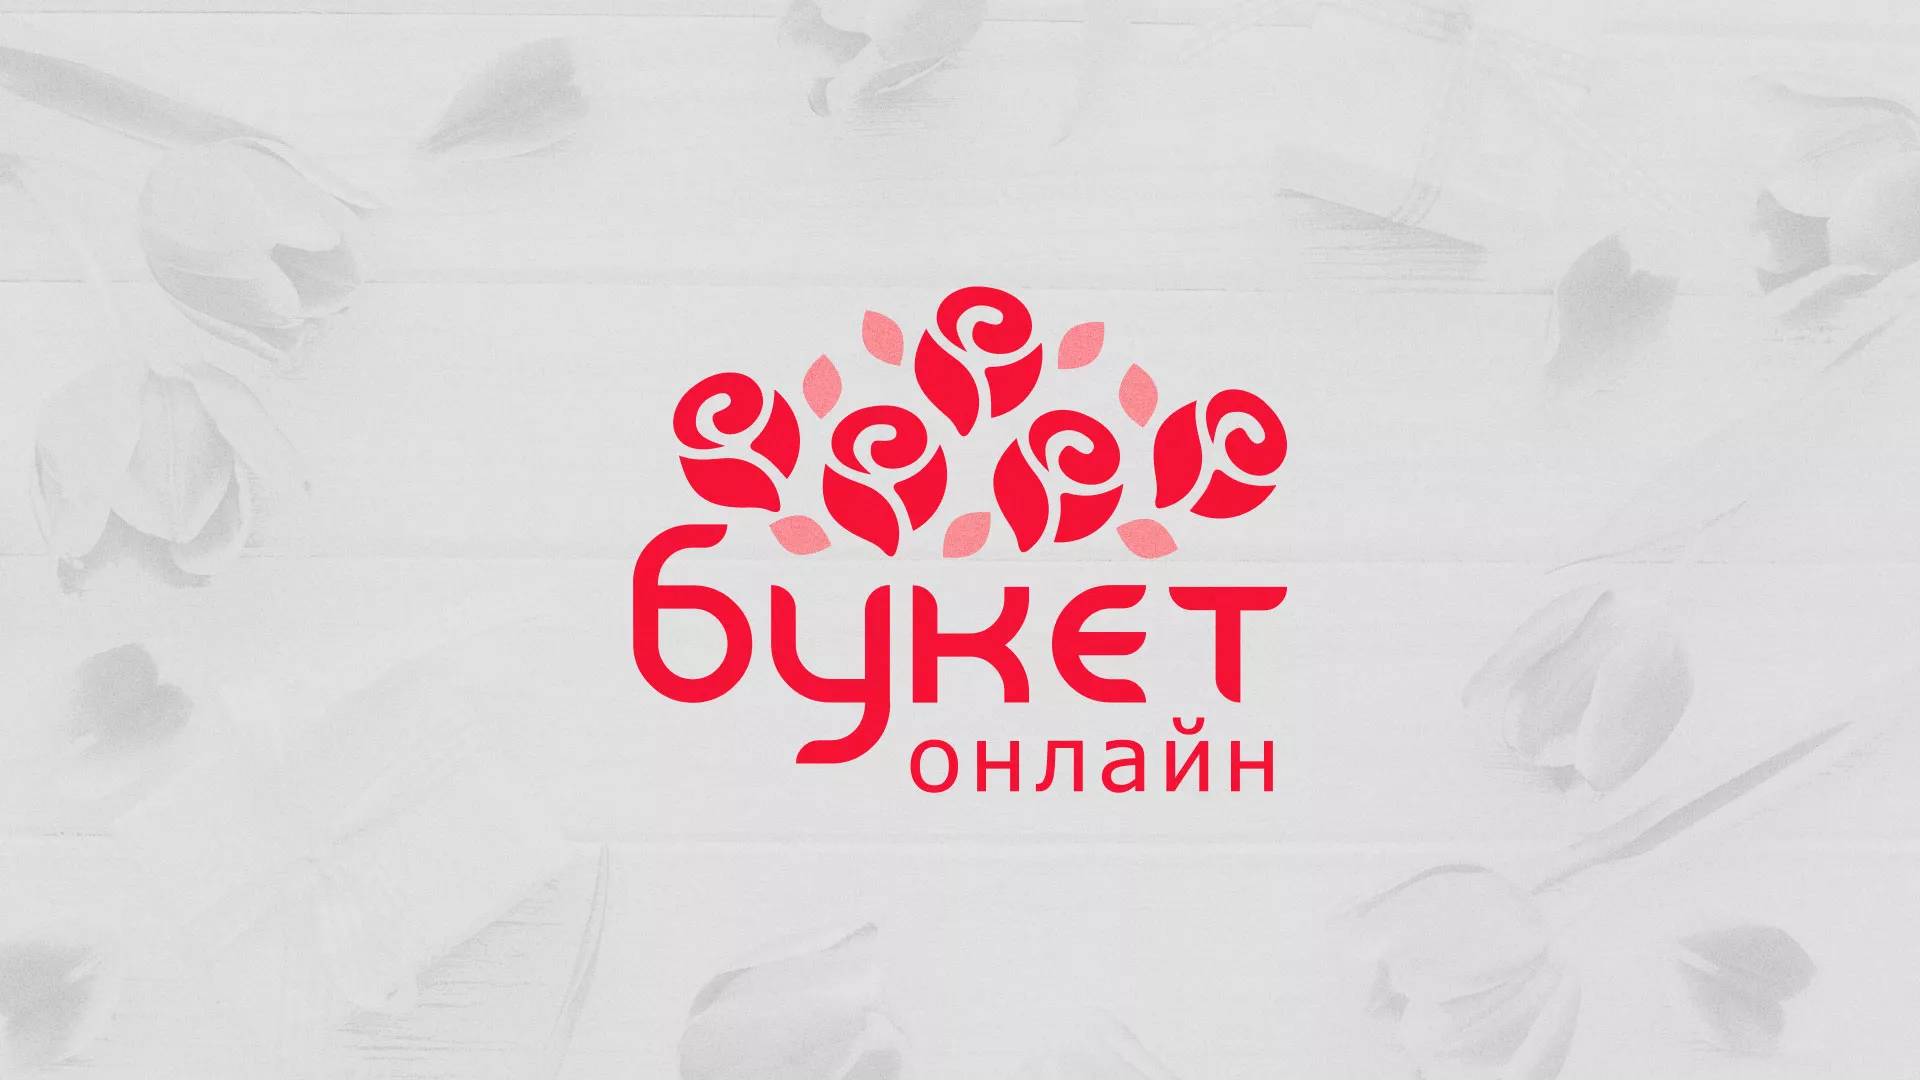 Создание интернет-магазина «Букет-онлайн» по цветам в Соликамске